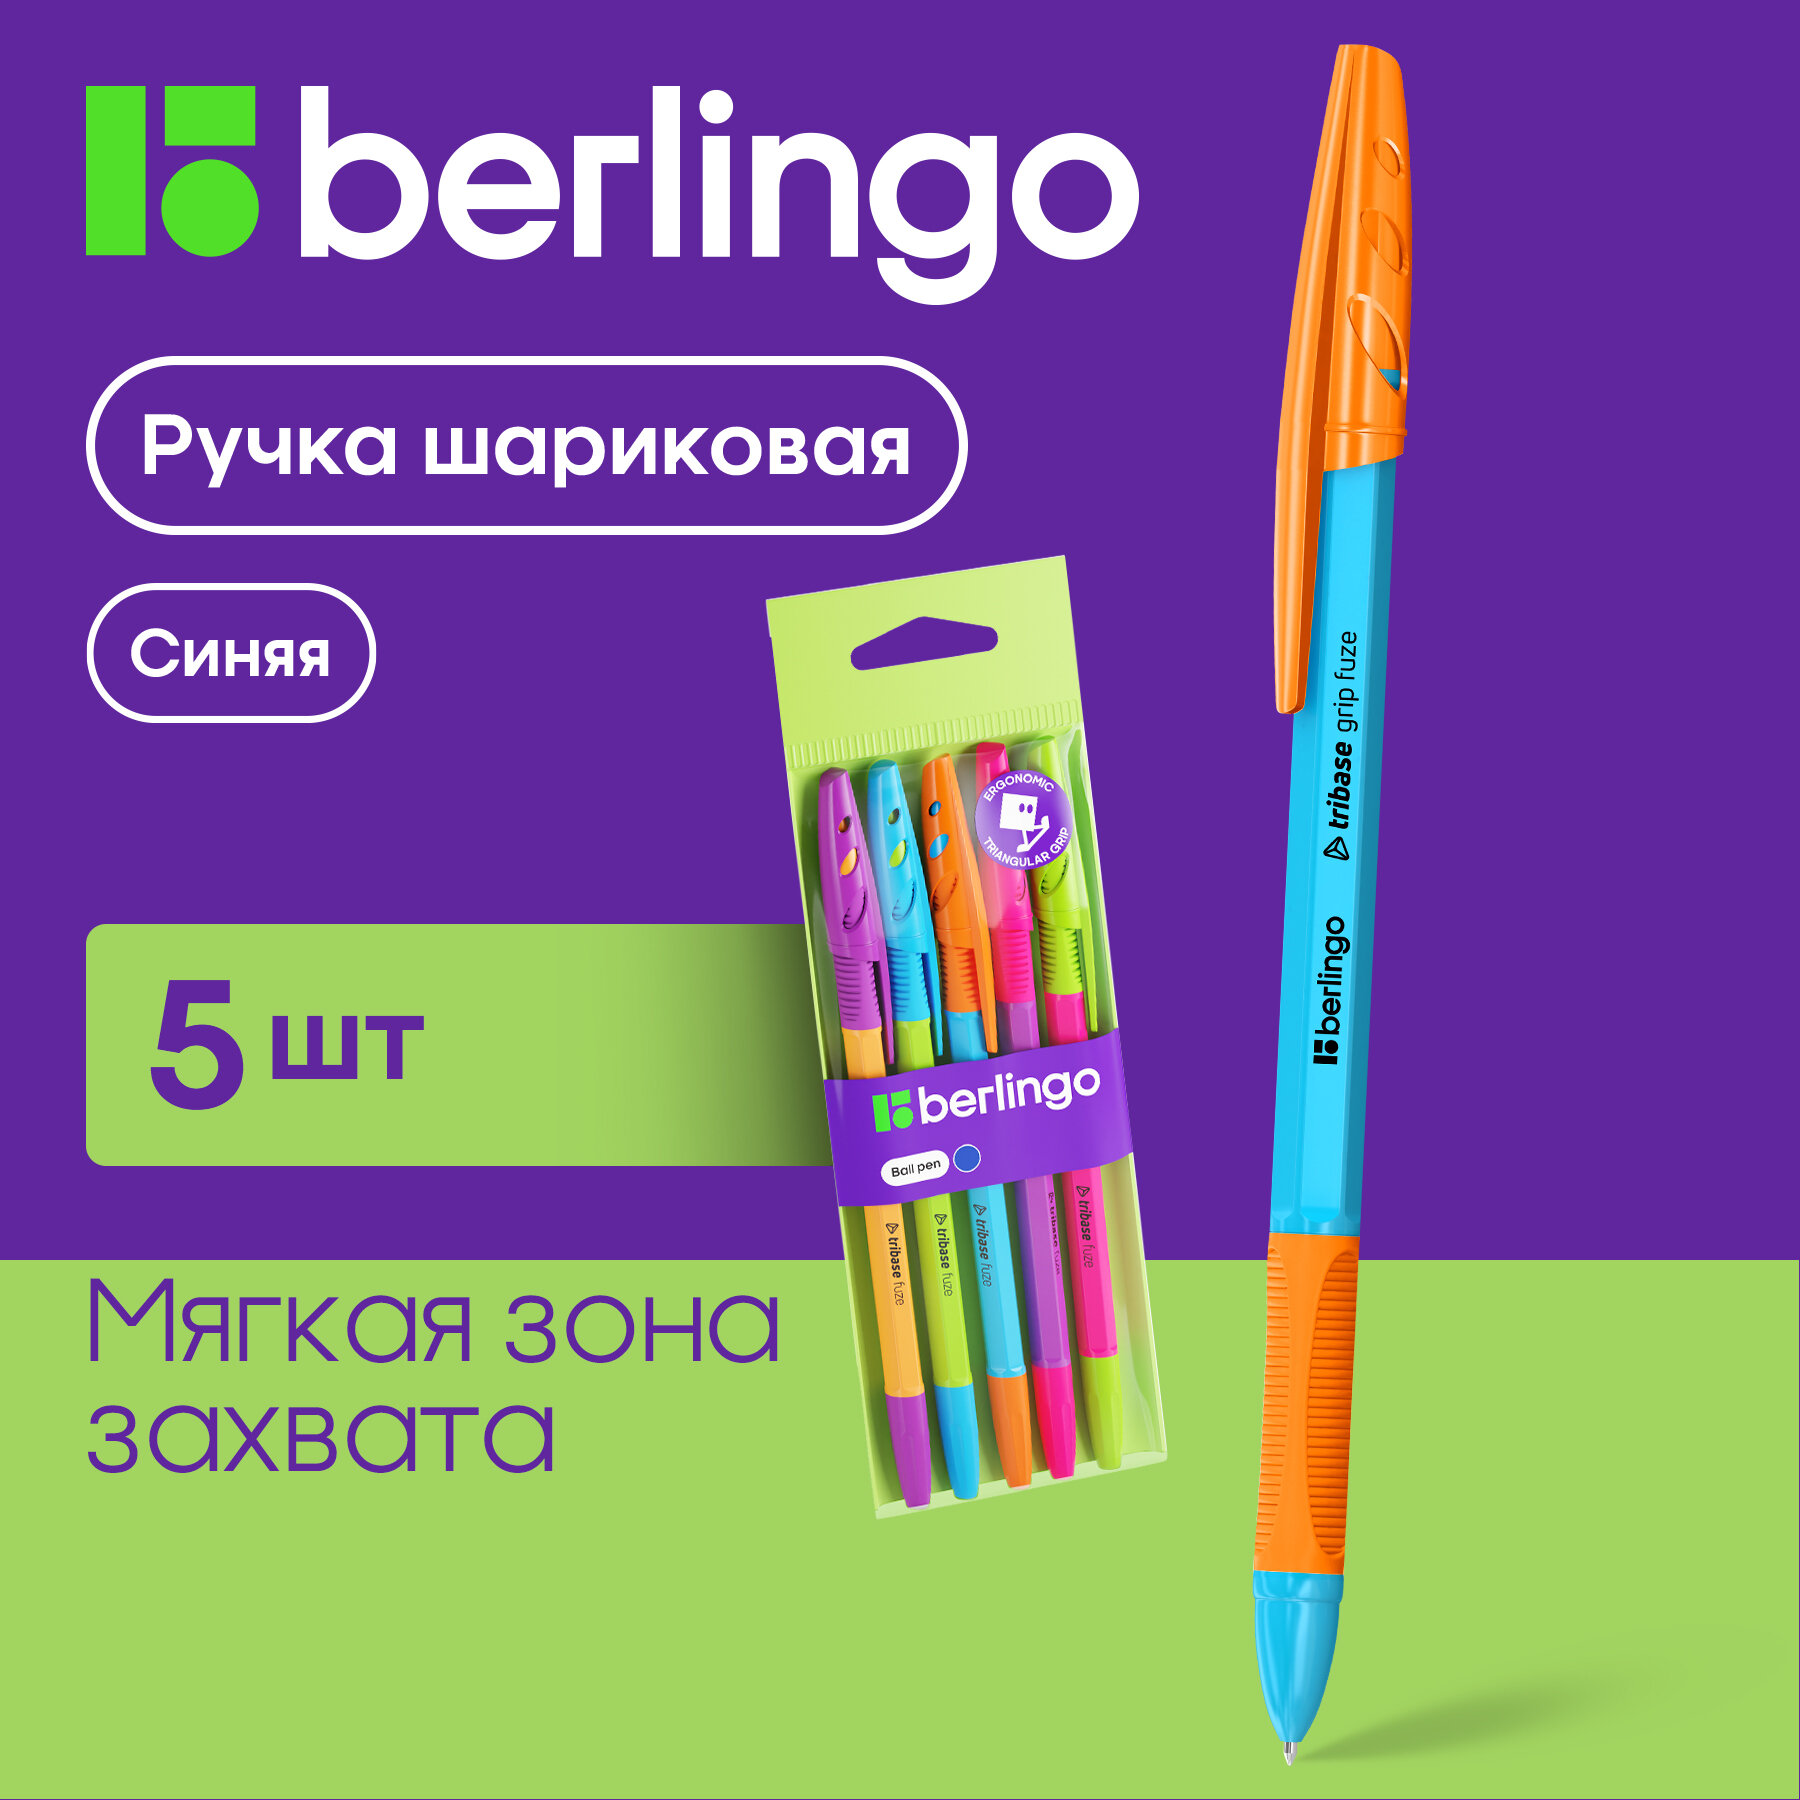 Ручка шариковая Berlingo "Tribase grip Fuze" синяя, 0,7мм, грип, 5 шт, пакет